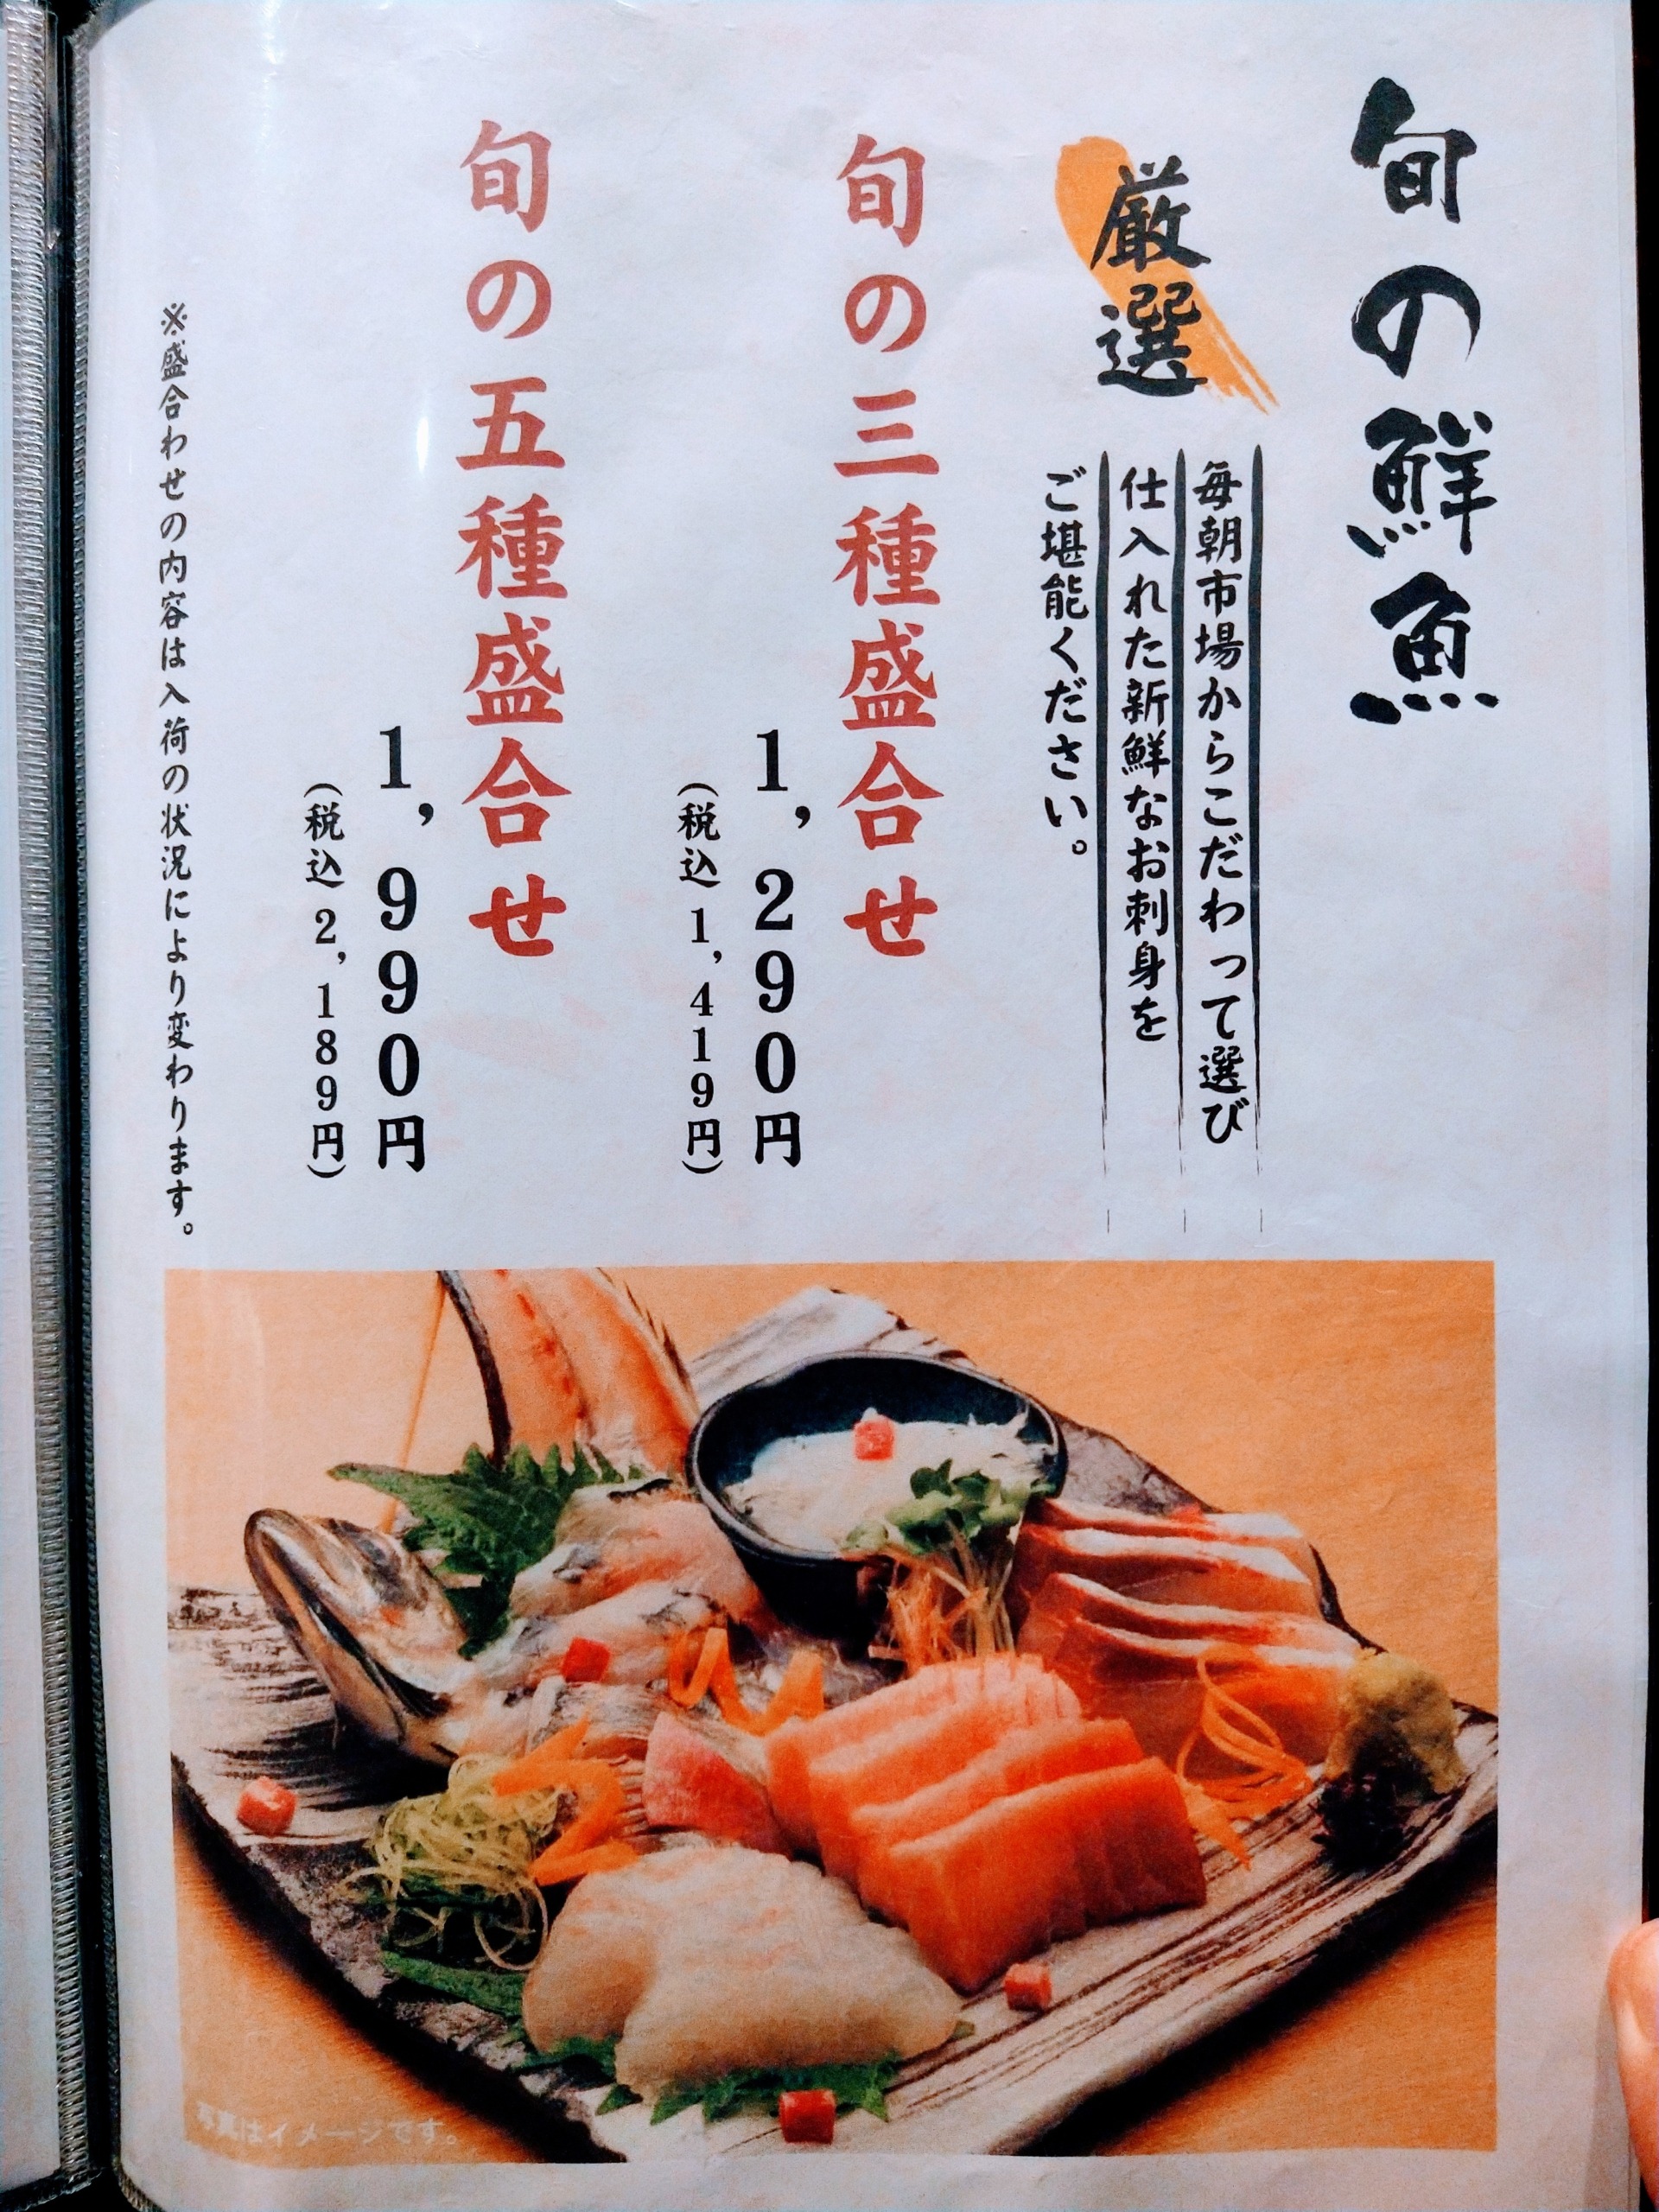 sakanano-manma-chofu-menu08